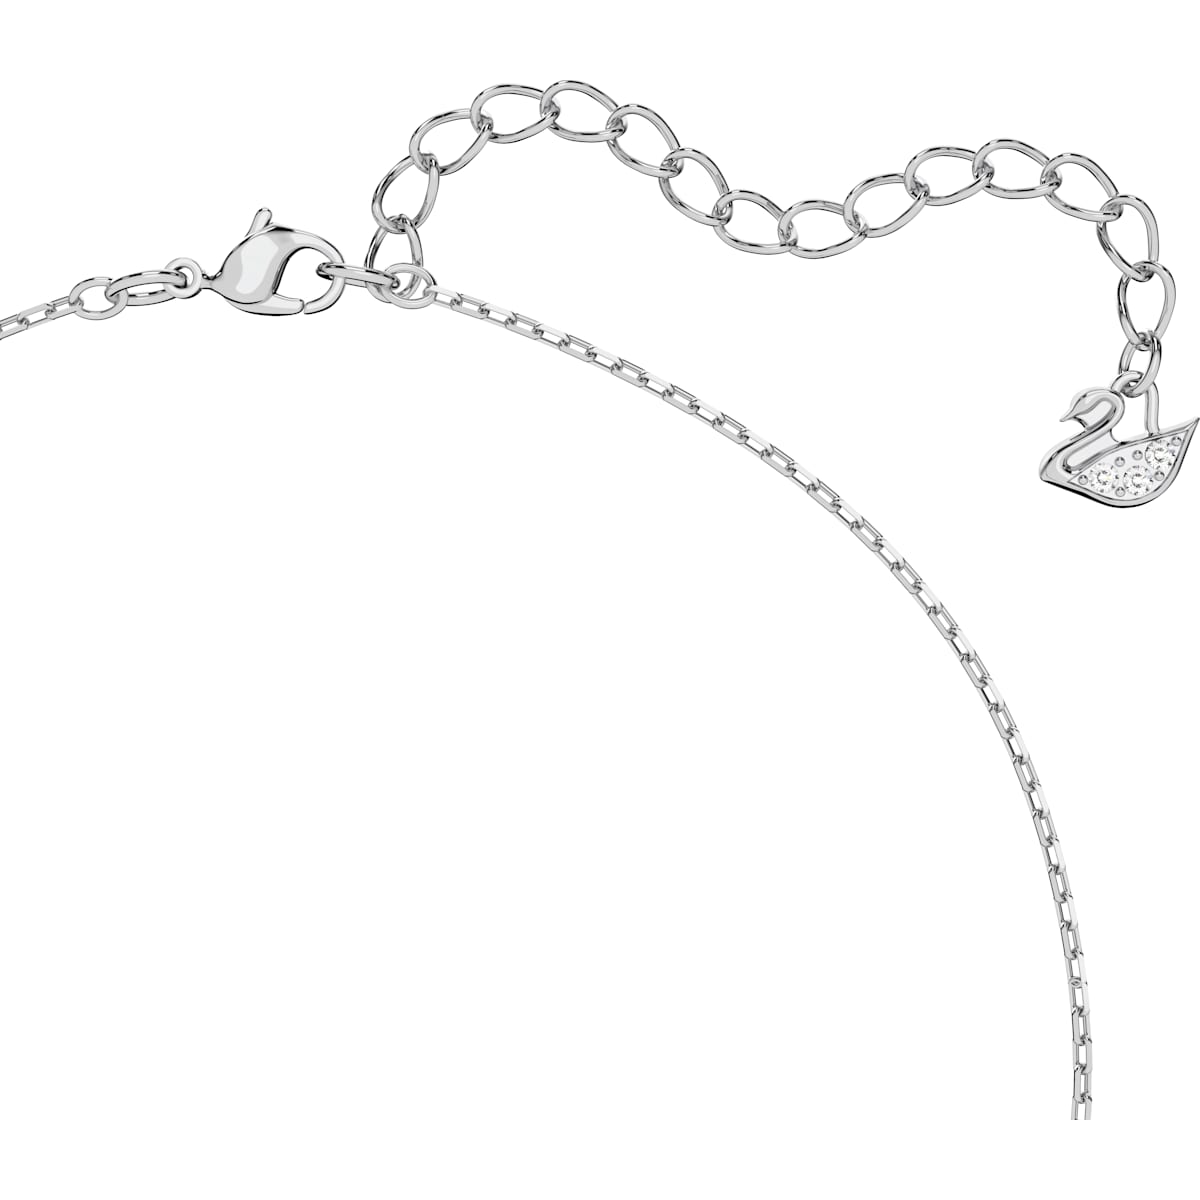 Swarovski - Millenia Halskette, Swarovski Zirkonia im Quadrat-Schliff, Weiß, Rhodiniert - CRYSTAL UNTERBERGER